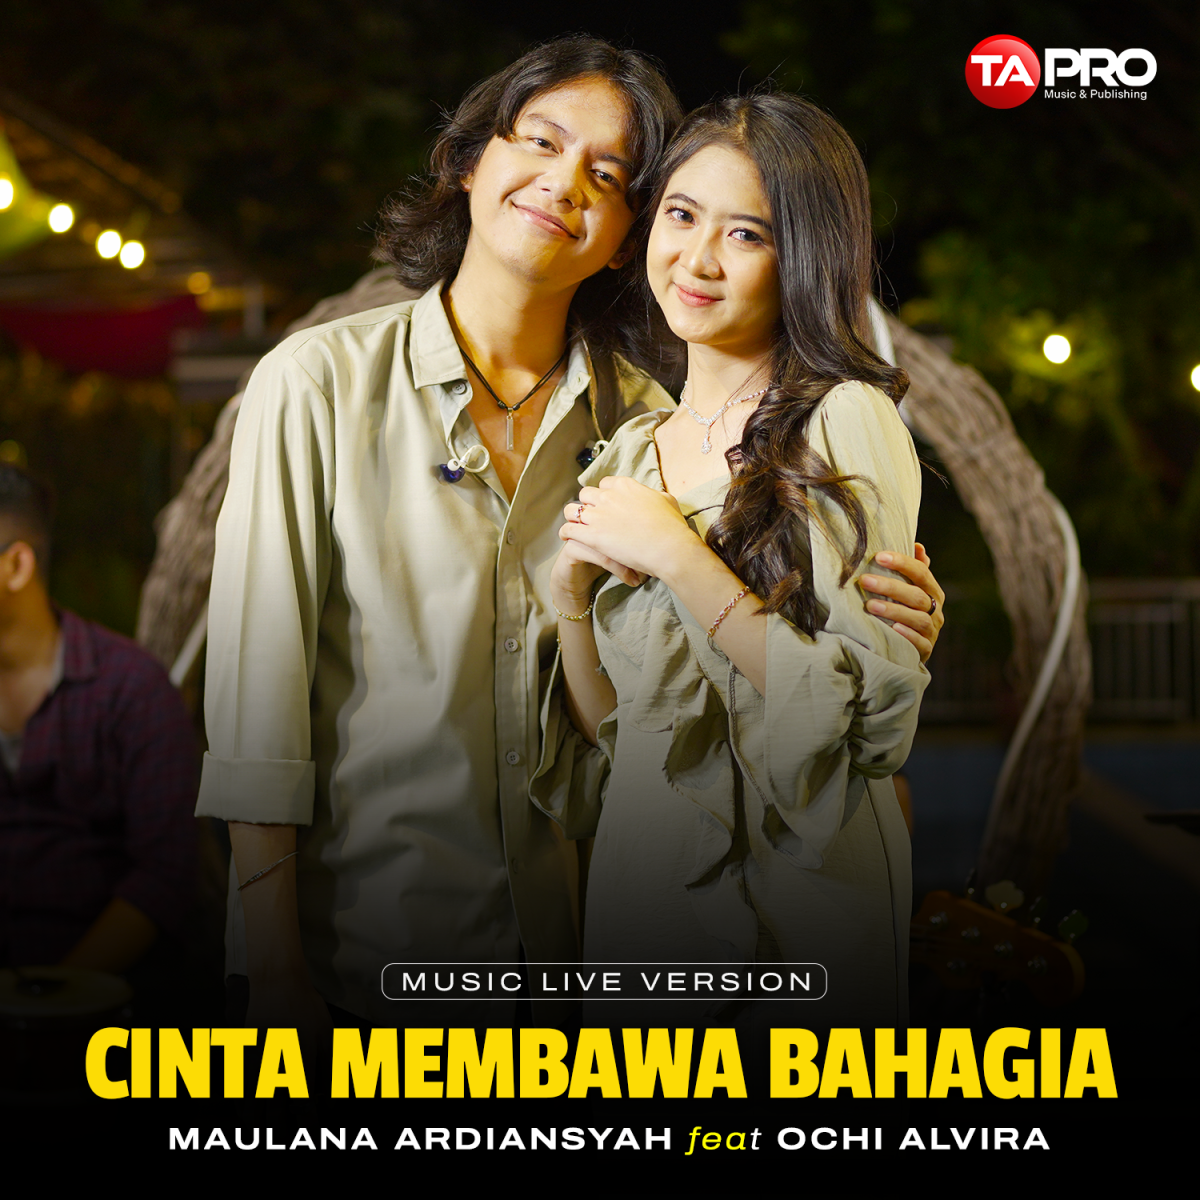 Duet Romantis Melesat Di Kolom Trending YouTube, Maulana Ardiansyah dan Ochi Alvira Sumringah!